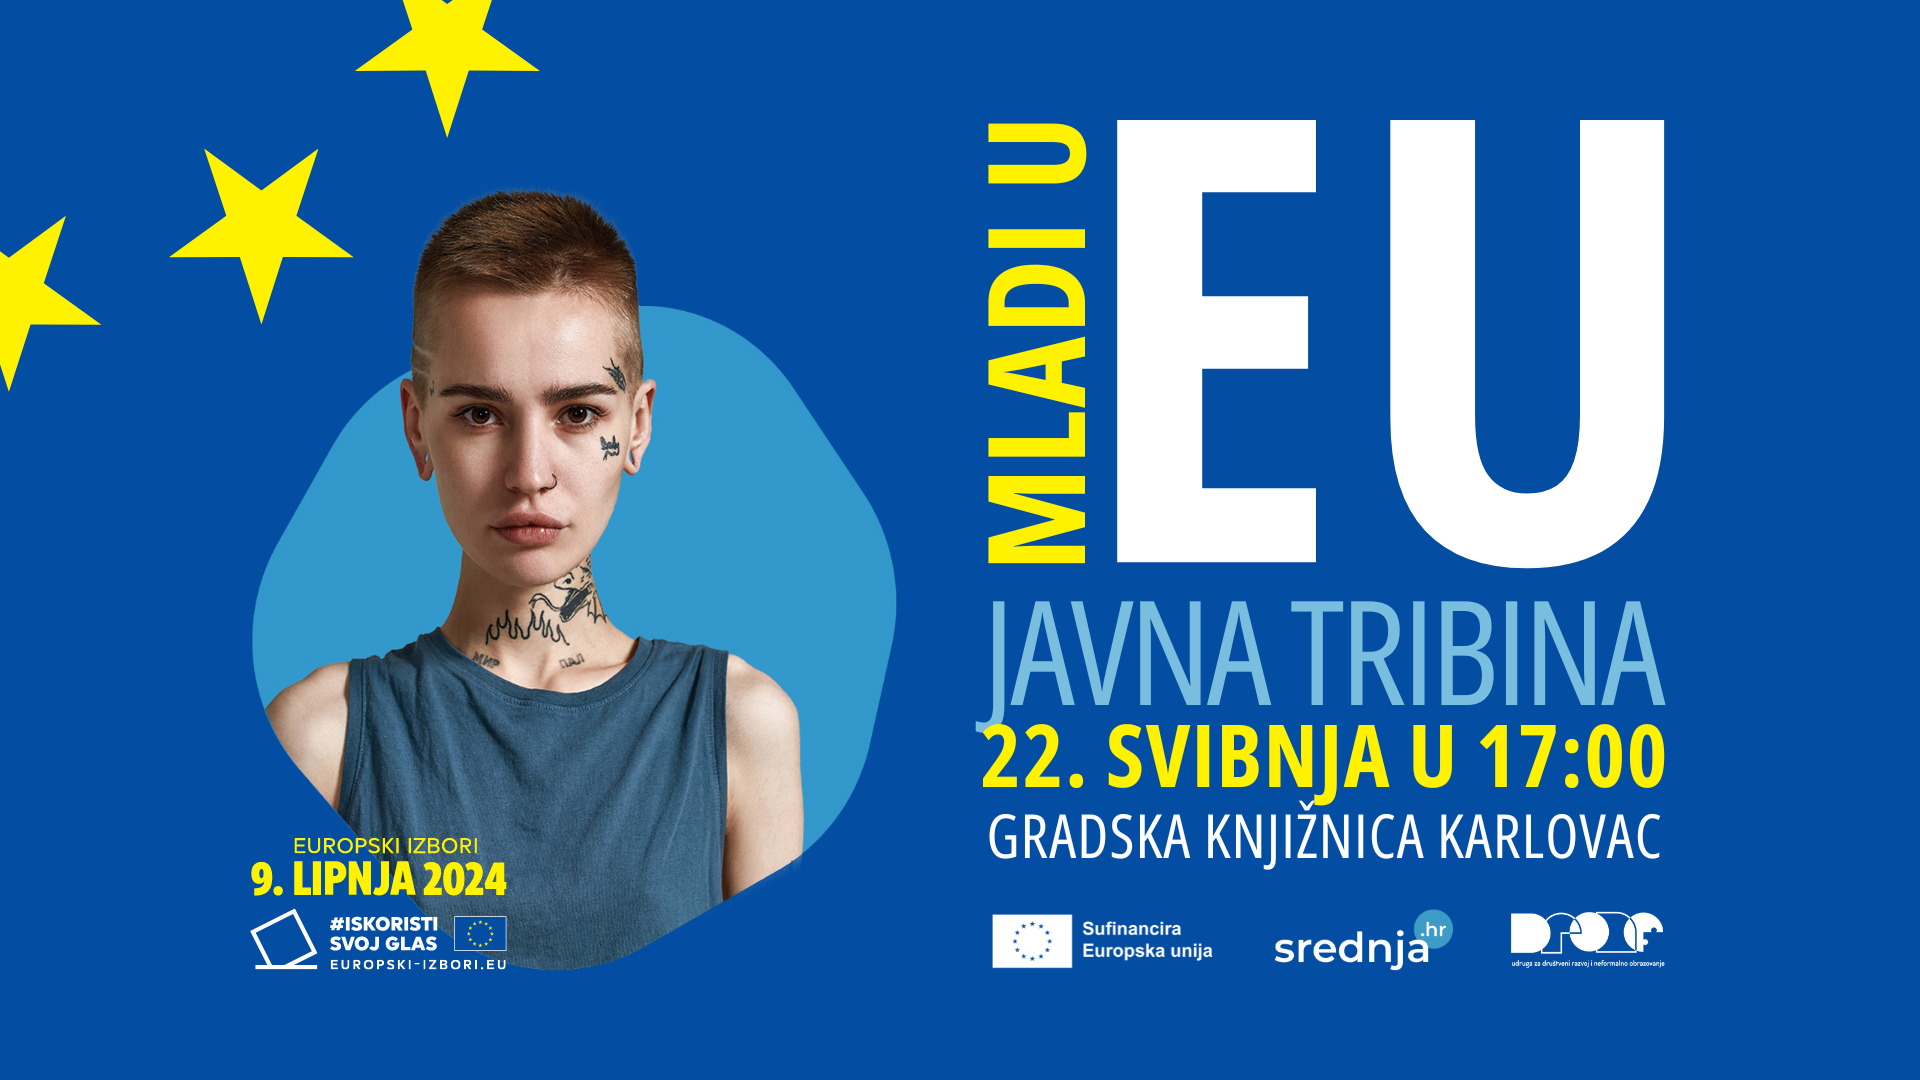 Mladi u EU, događaj kojeg organiziraju udruga DrONe i srednja.hr